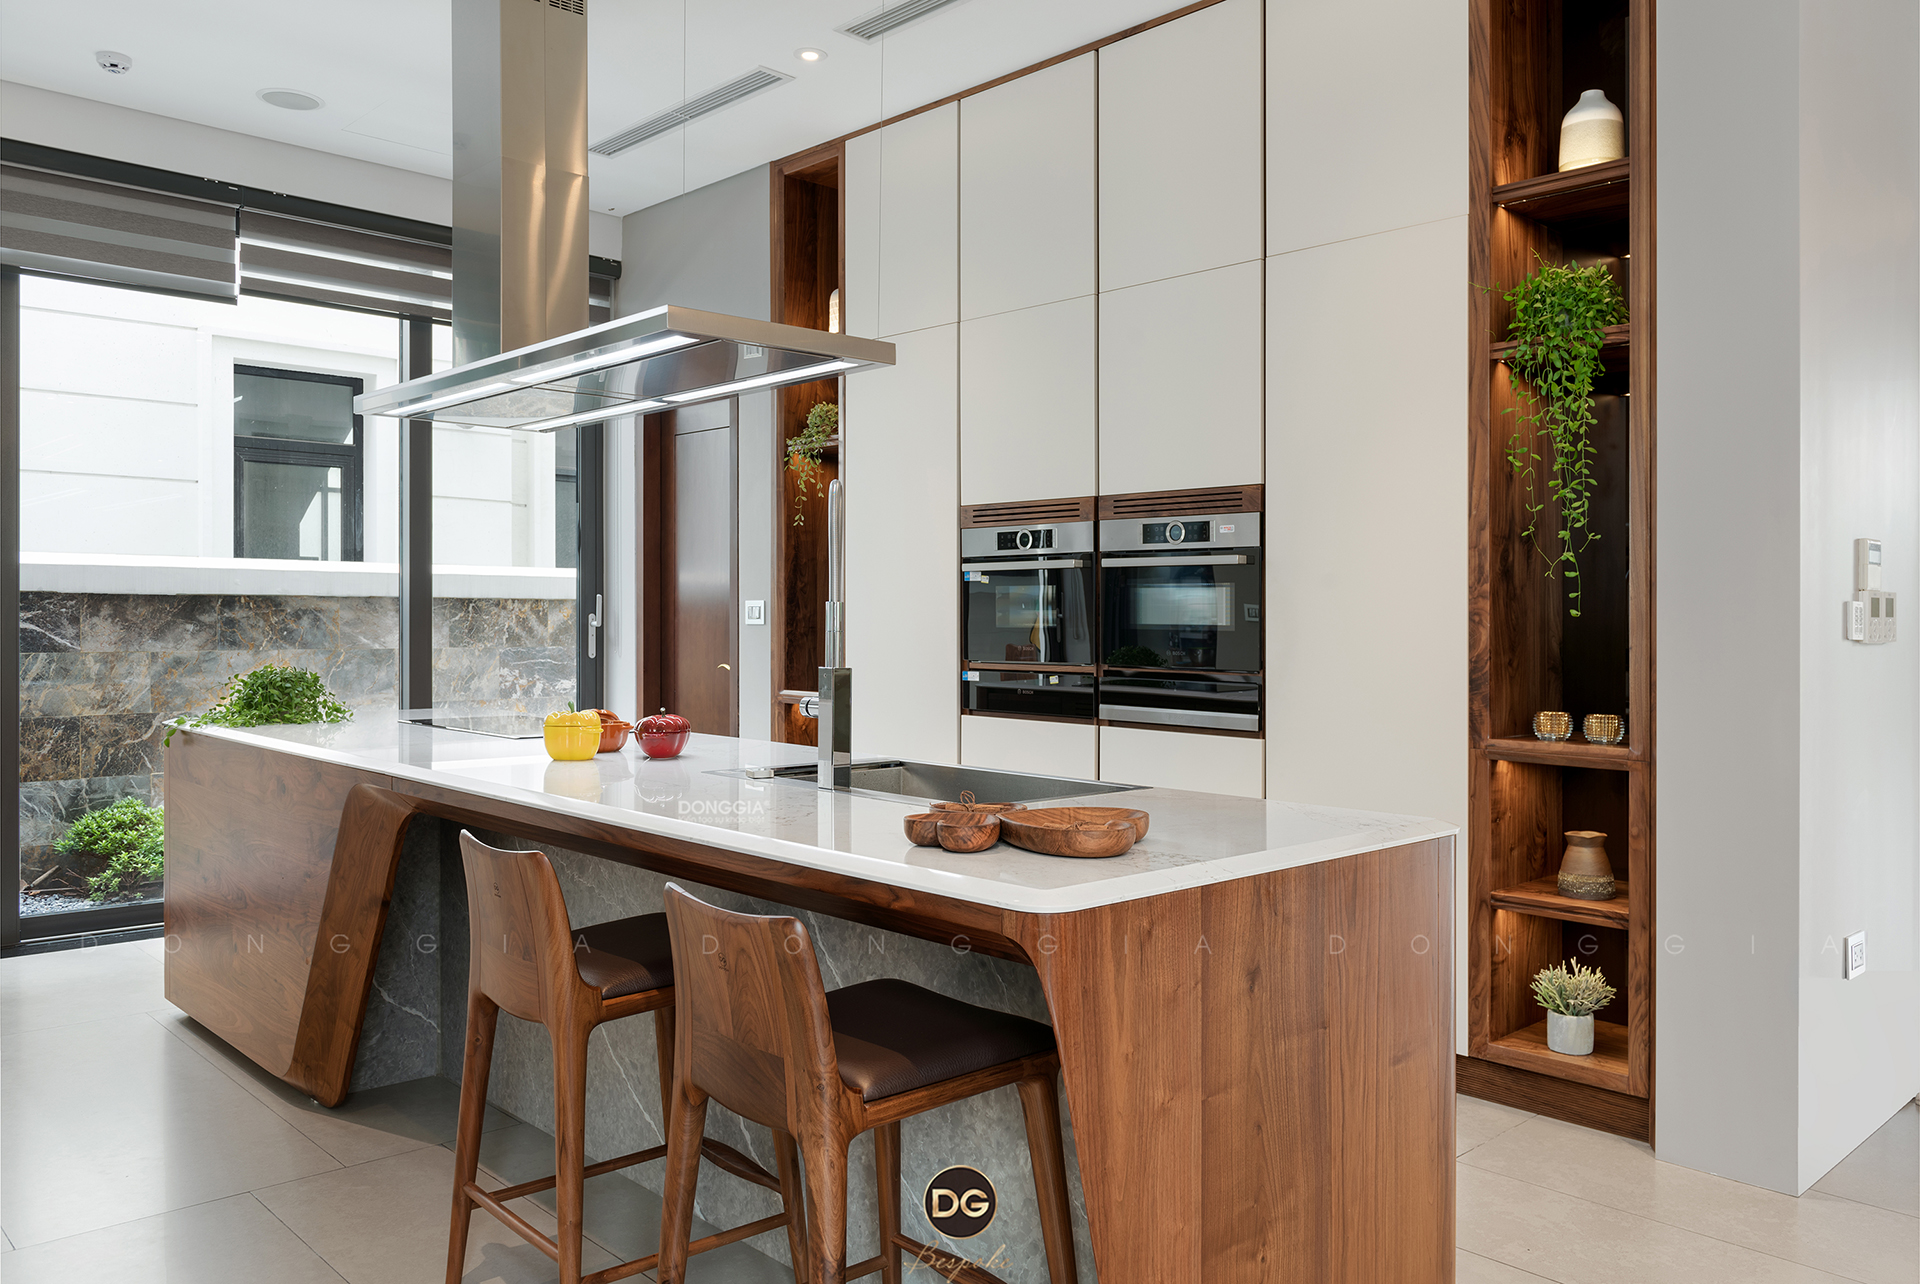 Đảo bếp hiện đại 2024: Với những hình ảnh của đảo bếp hiện đại 2024 trên trang của chúng tôi, bạn sẽ được trải nghiệm một không gian bếp đầy sáng tạo và tiện nghi vượt trội. Với thiết kế đẹp mắt, tinh tế và hoàn hảo từ mọi góc độ, đảo bếp này sẽ là tâm điểm của ngôi nhà của bạn.